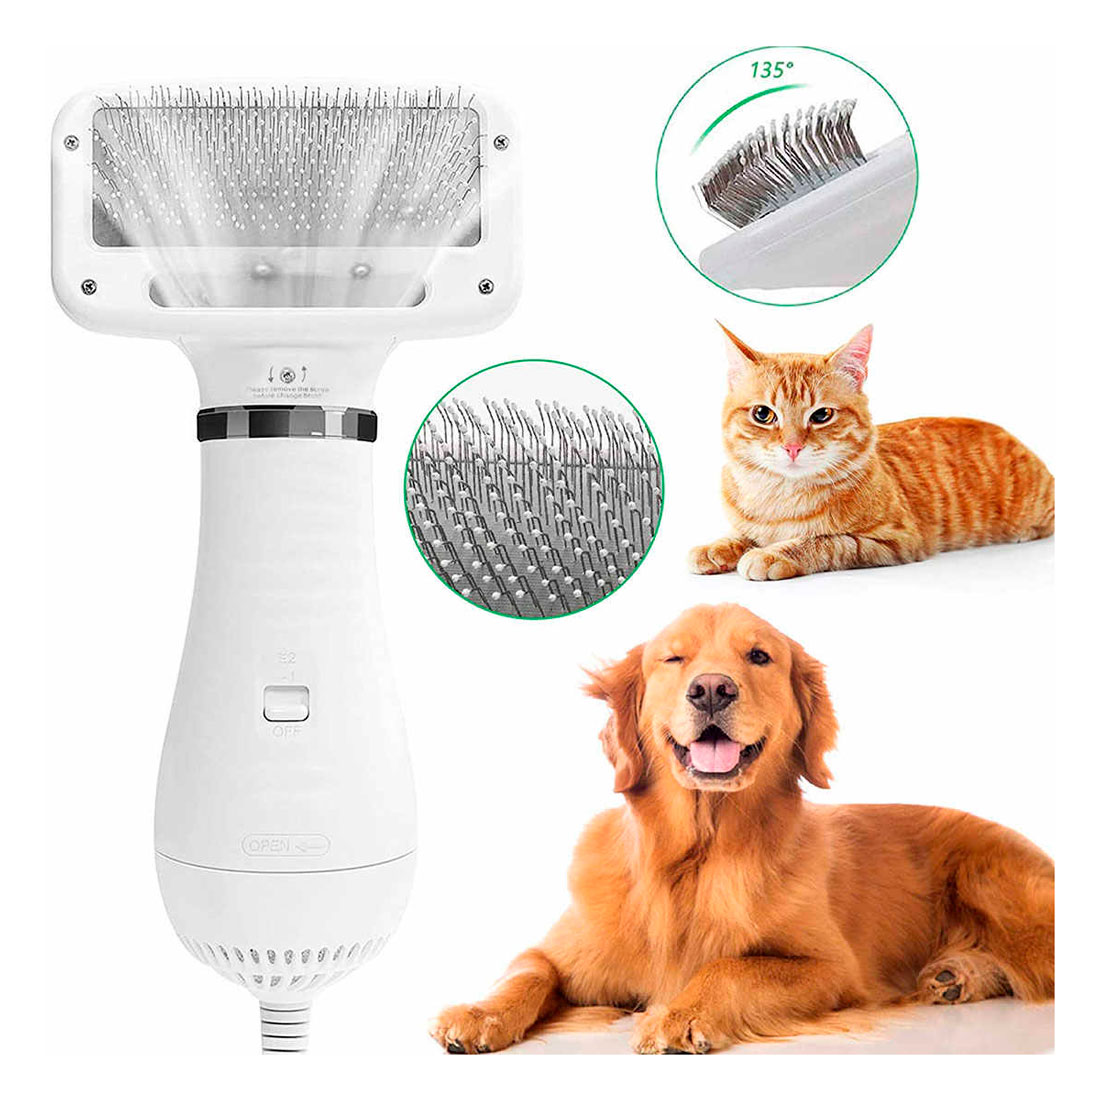 Cepillo Secador para Mascotas bajo nivel de ruido y temperatura –